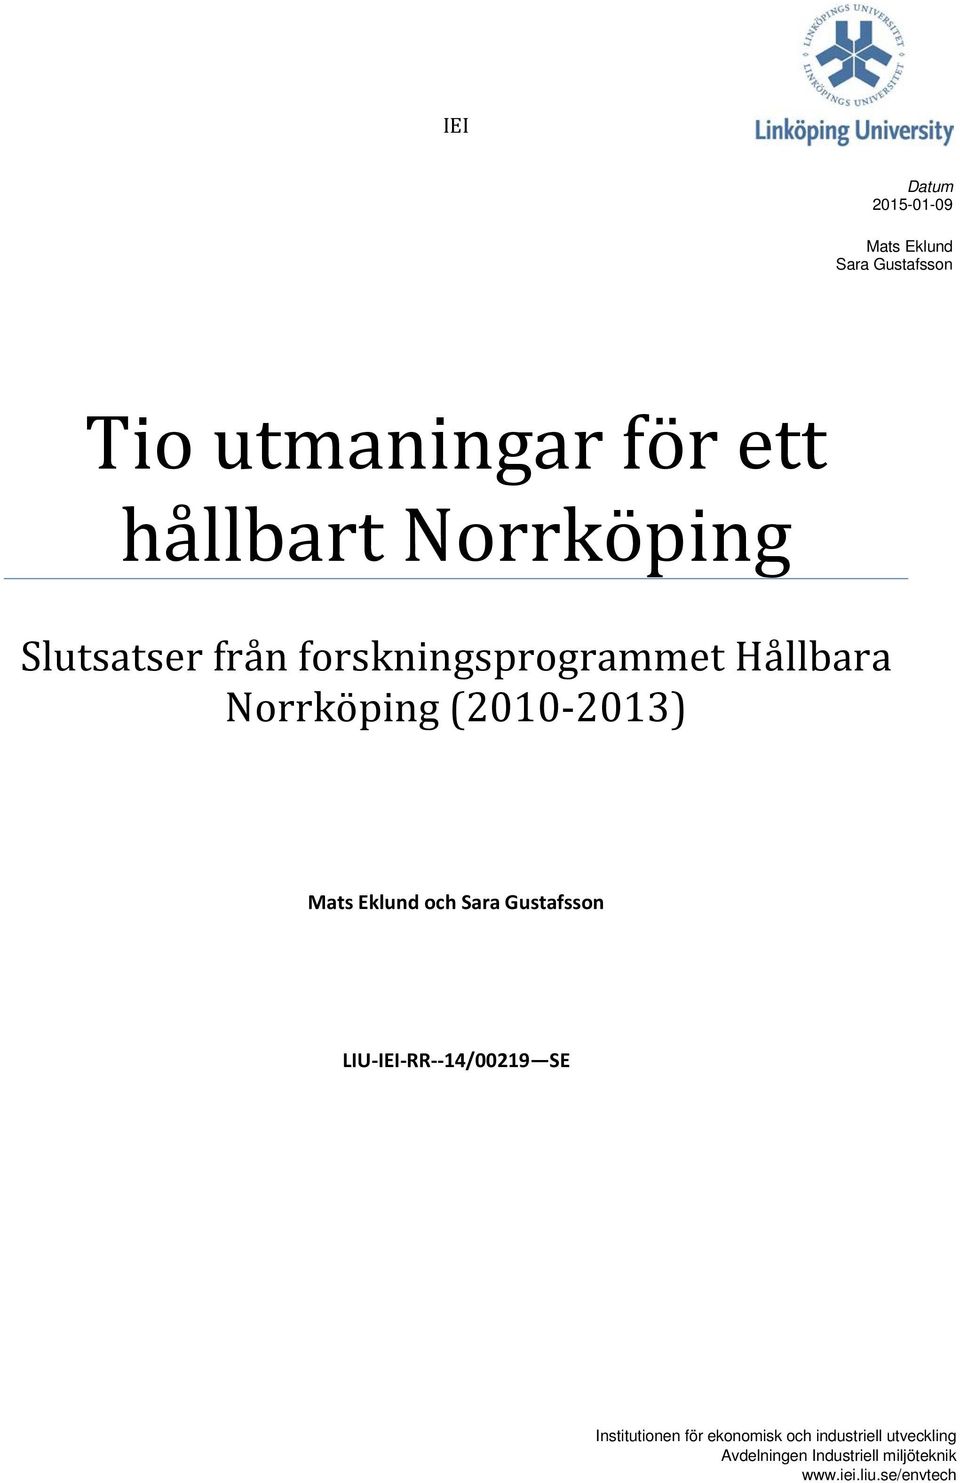 Mats Eklund och Sara Gustafsson LIU-IEI-RR--14/00219 SE Institutionen för